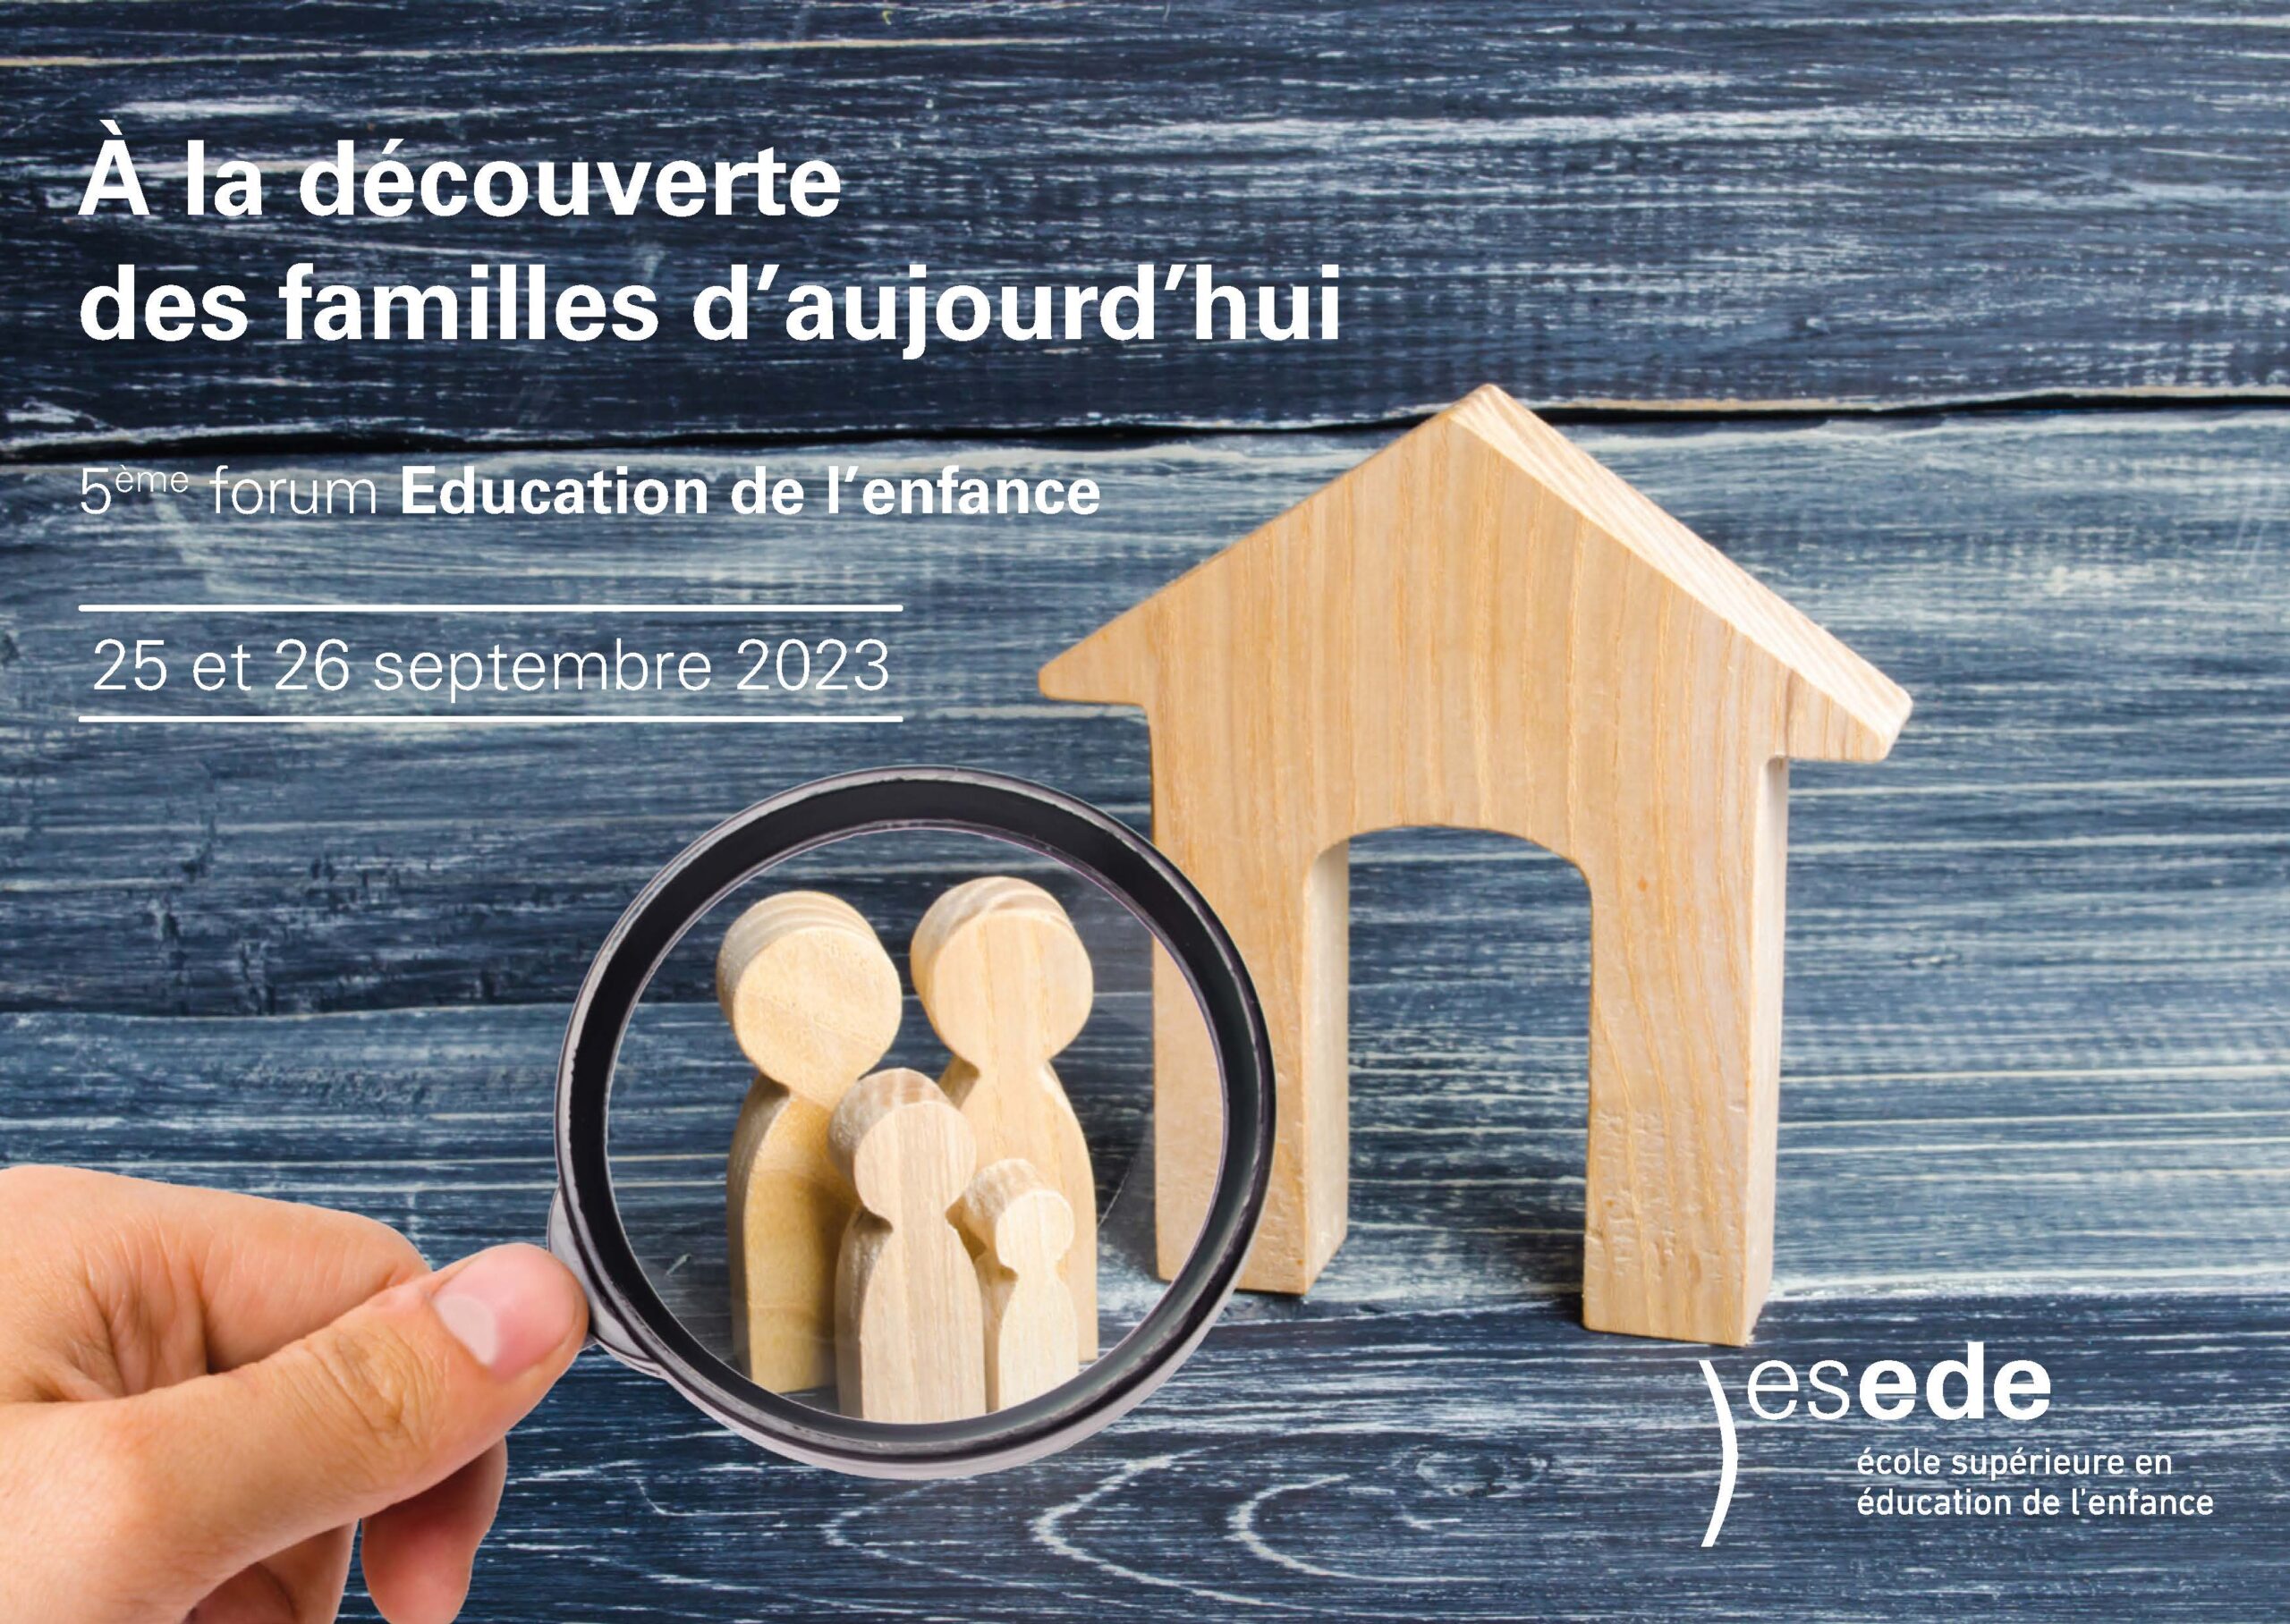 Forum Education de l’Enfance 2023 – save the date